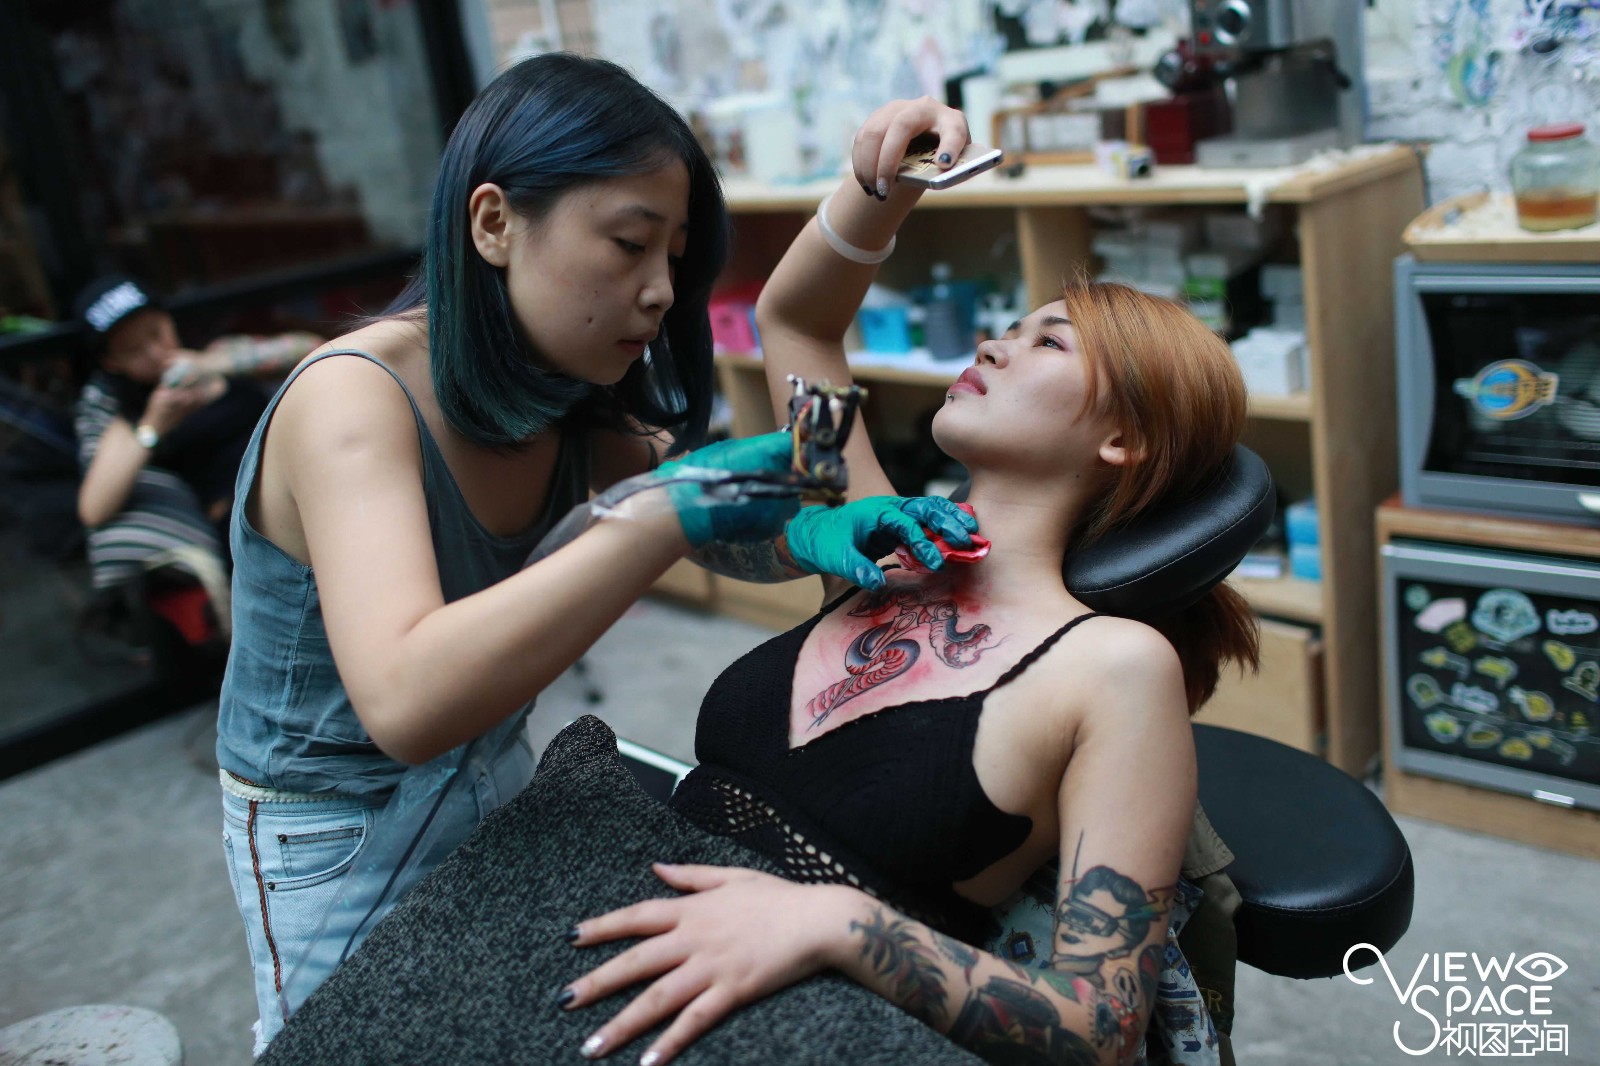 月入上万的90后美女纹身师,与常人不一样的生活